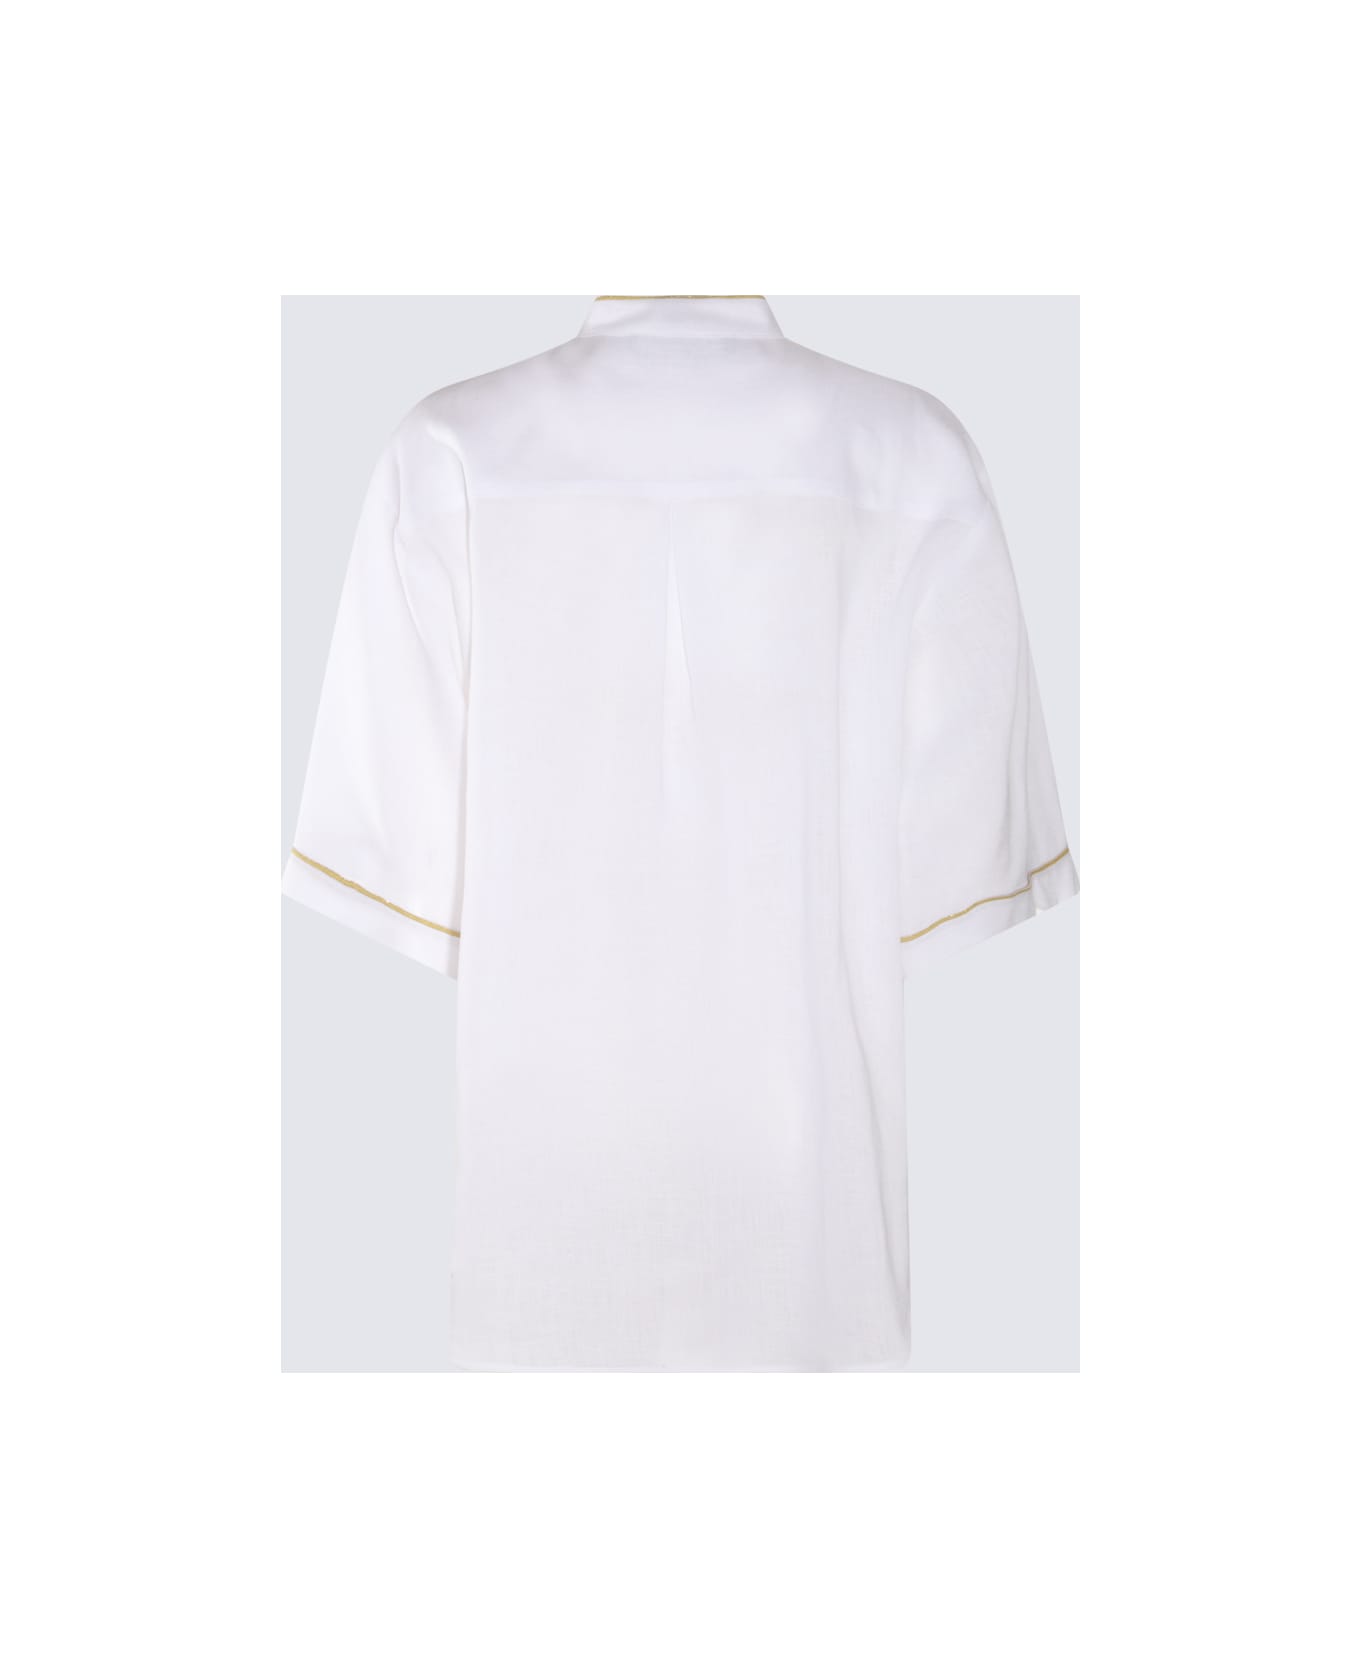 Fabiana Filippi White Cotton Shirt - White シャツ